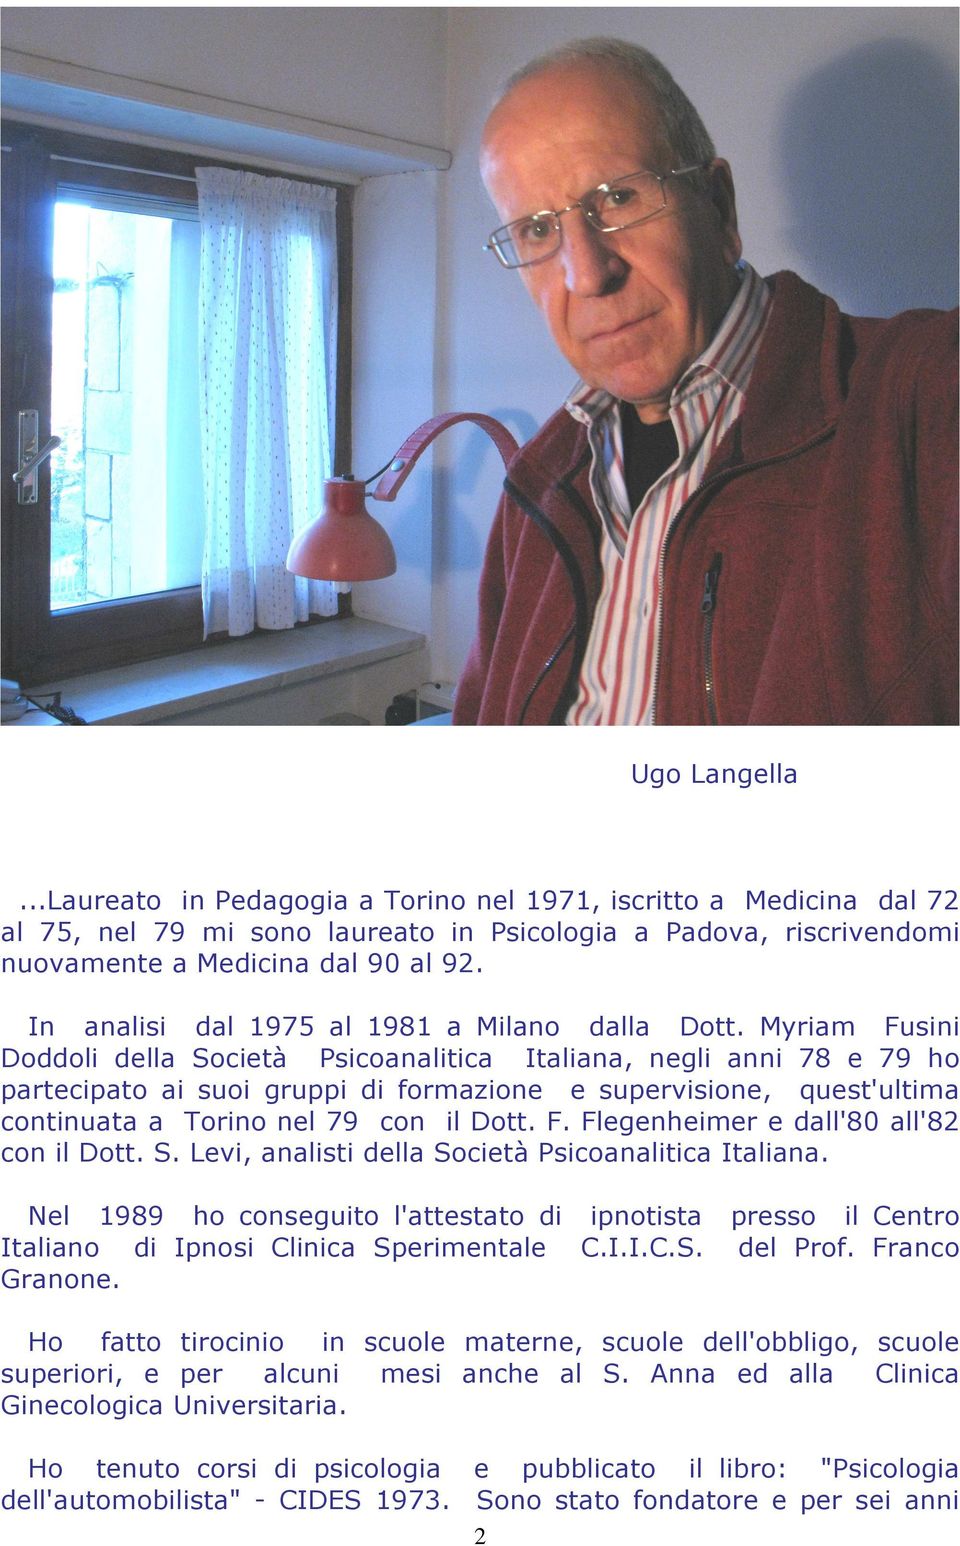 Myriam Fusini Doddoli della Società Psicoanalitica Italiana, negli anni 78 e 79 ho partecipato ai suoi gruppi di formazione e supervisione, quest'ultima continuata a Torino nel 79 con il Dott. F. Flegenheimer e dall'80 all'82 con il Dott.